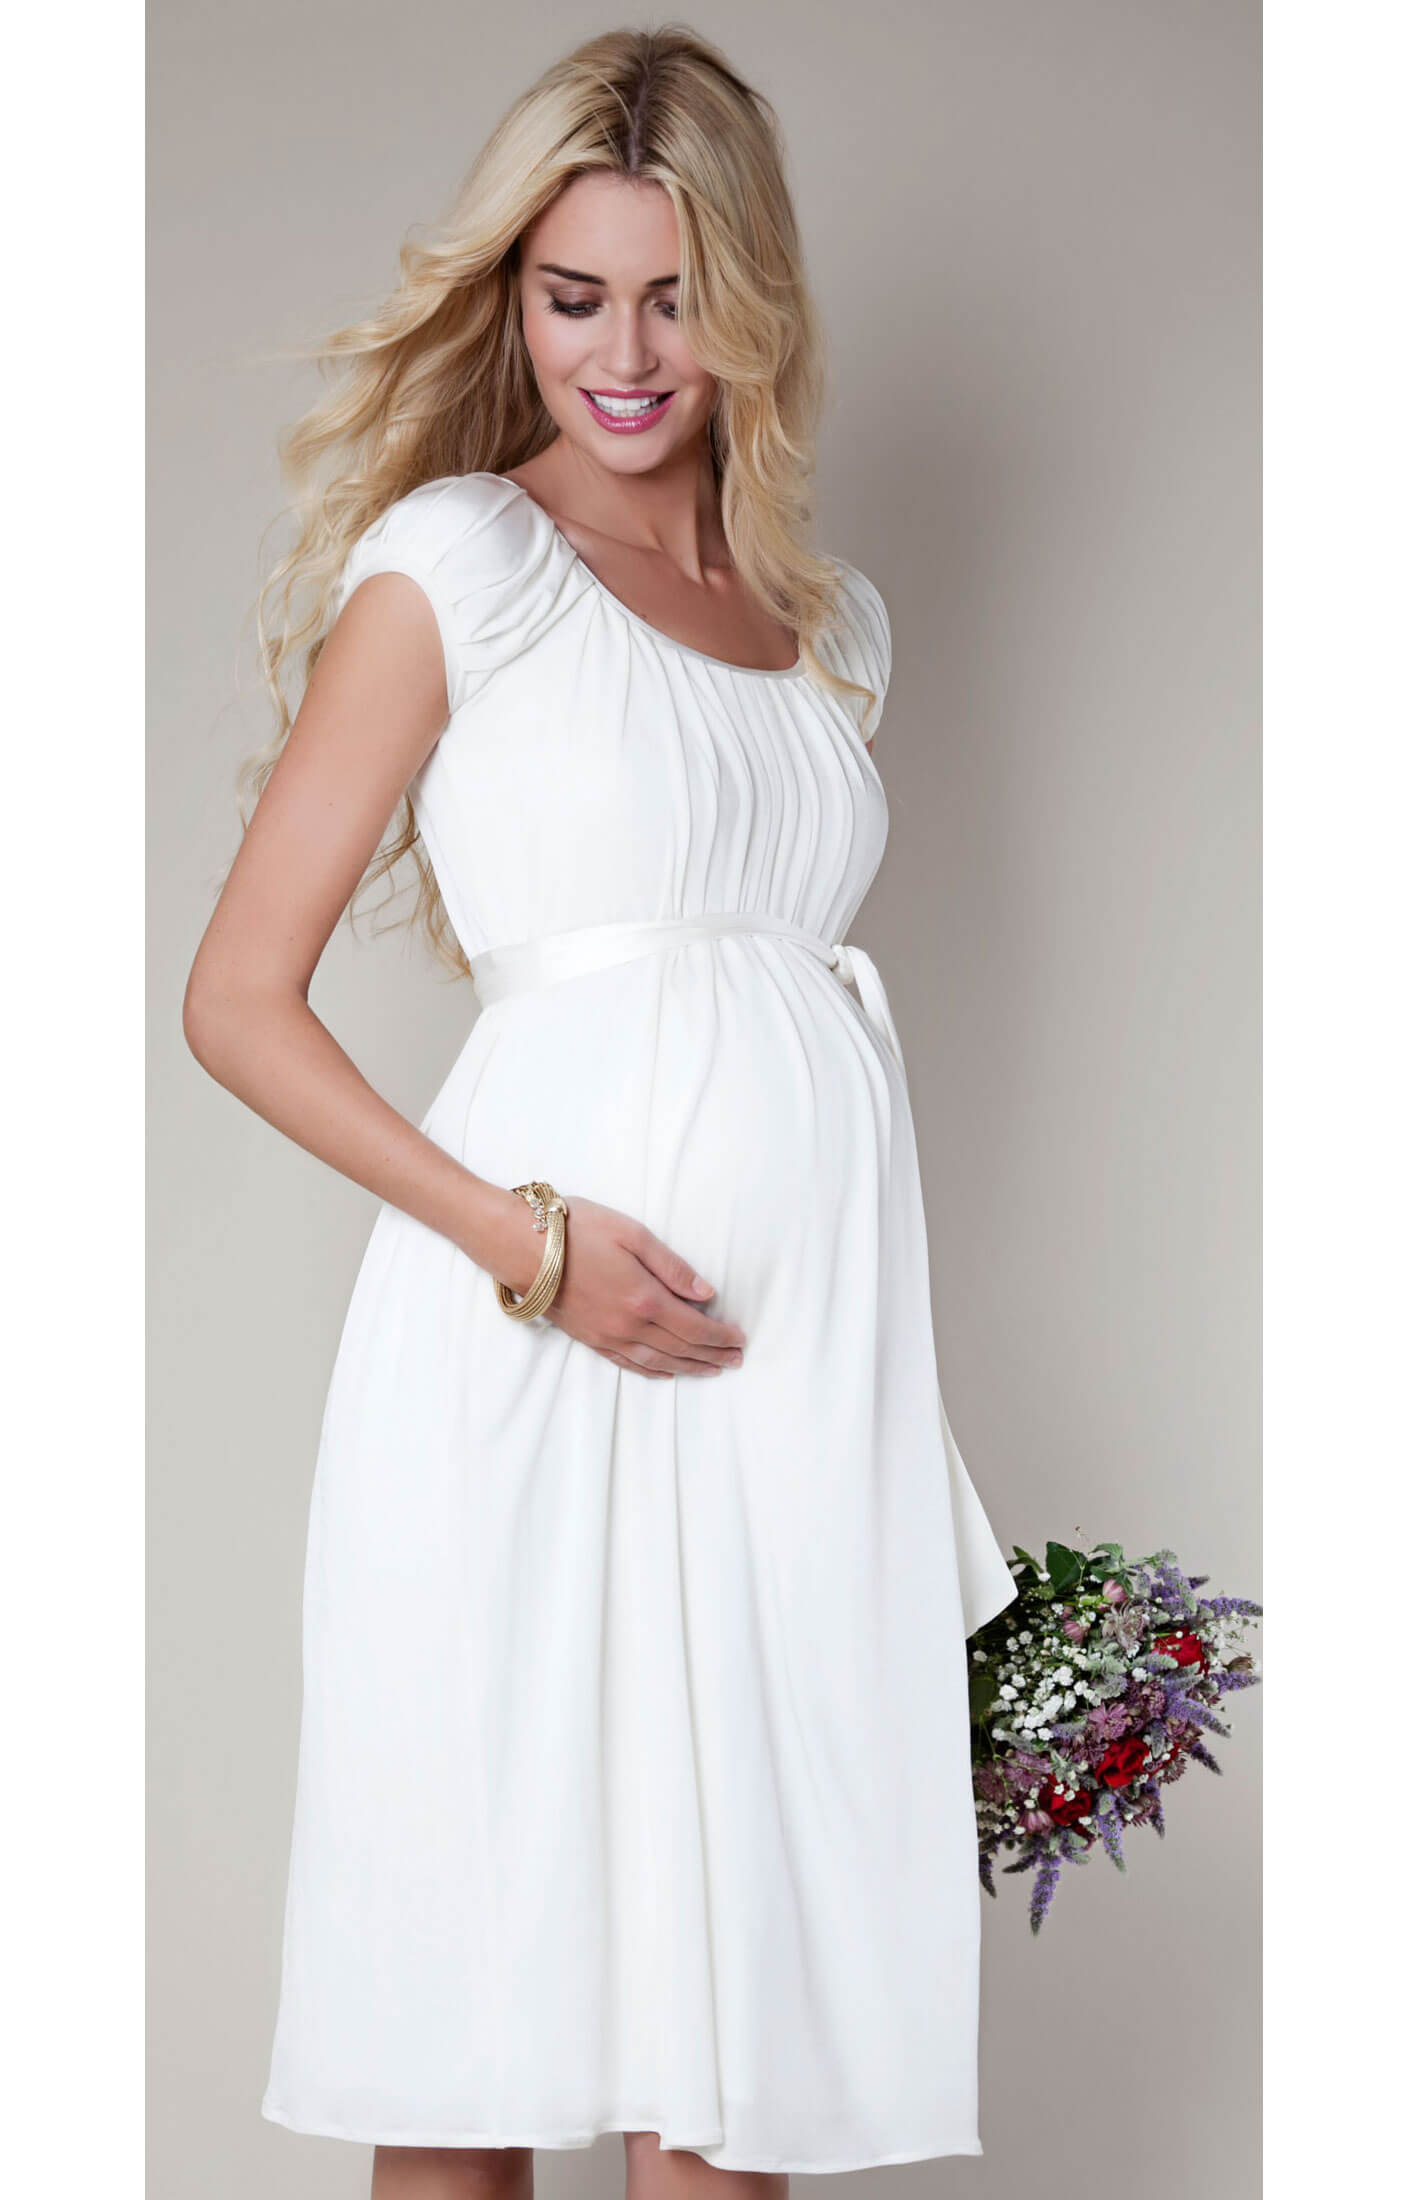 Платья свадебные для беременных скрывающие живот пышные